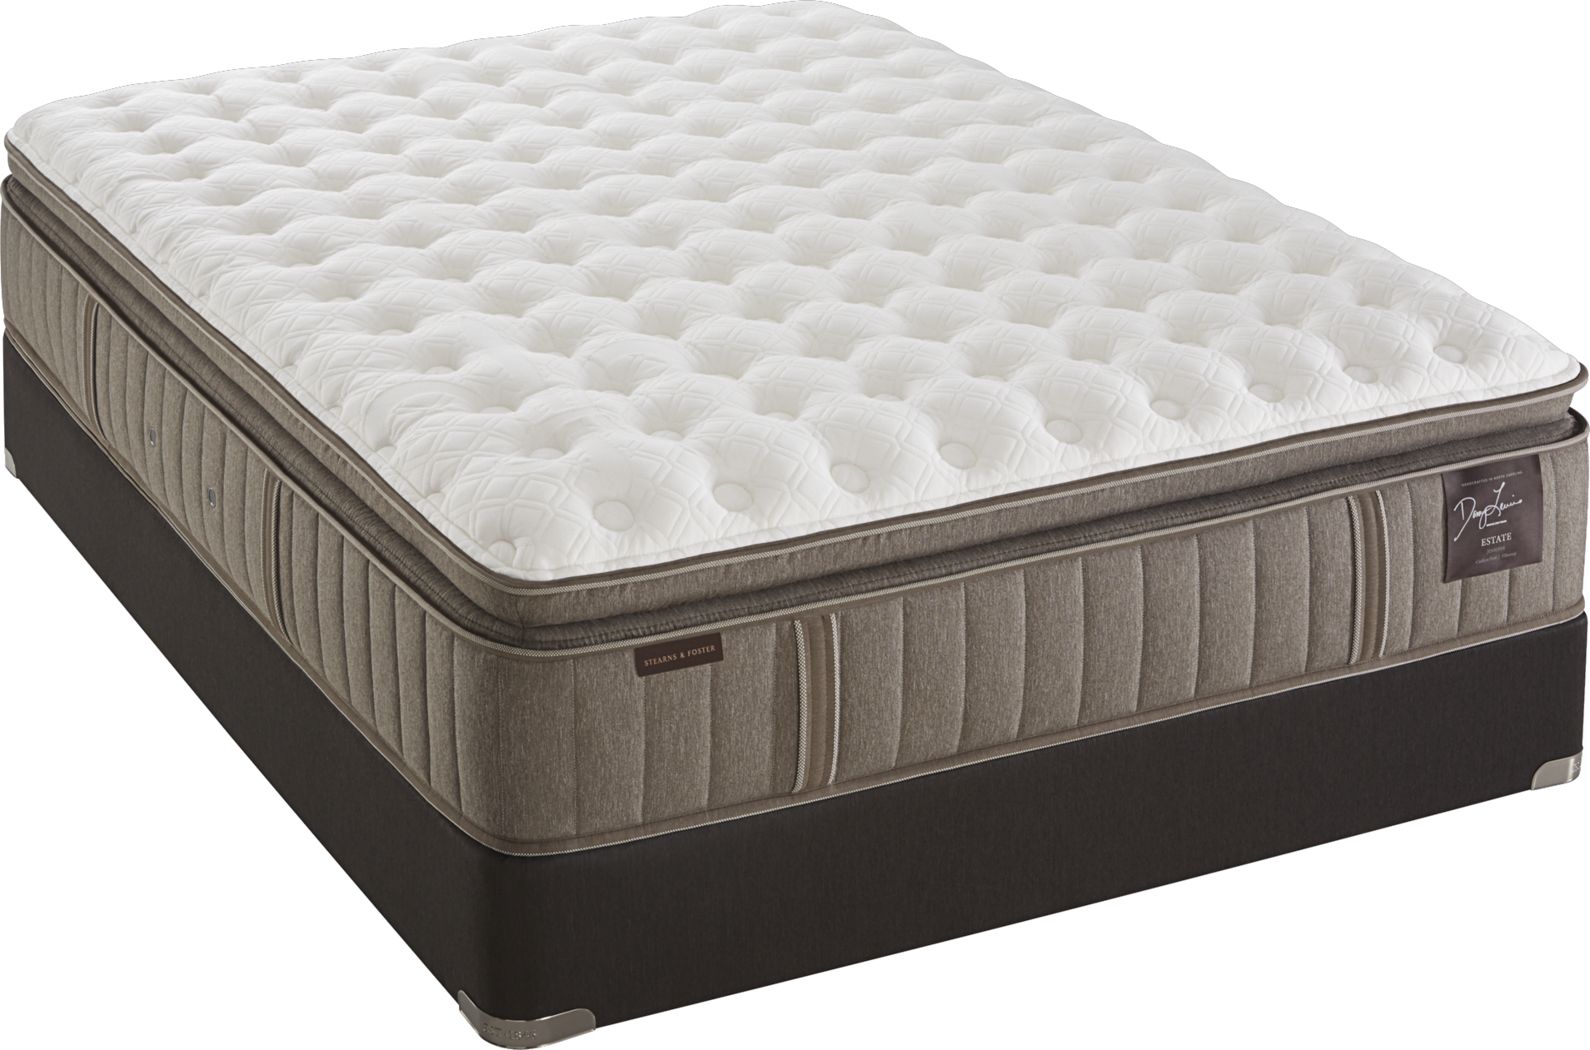 la fiorentini iv mattress reviews